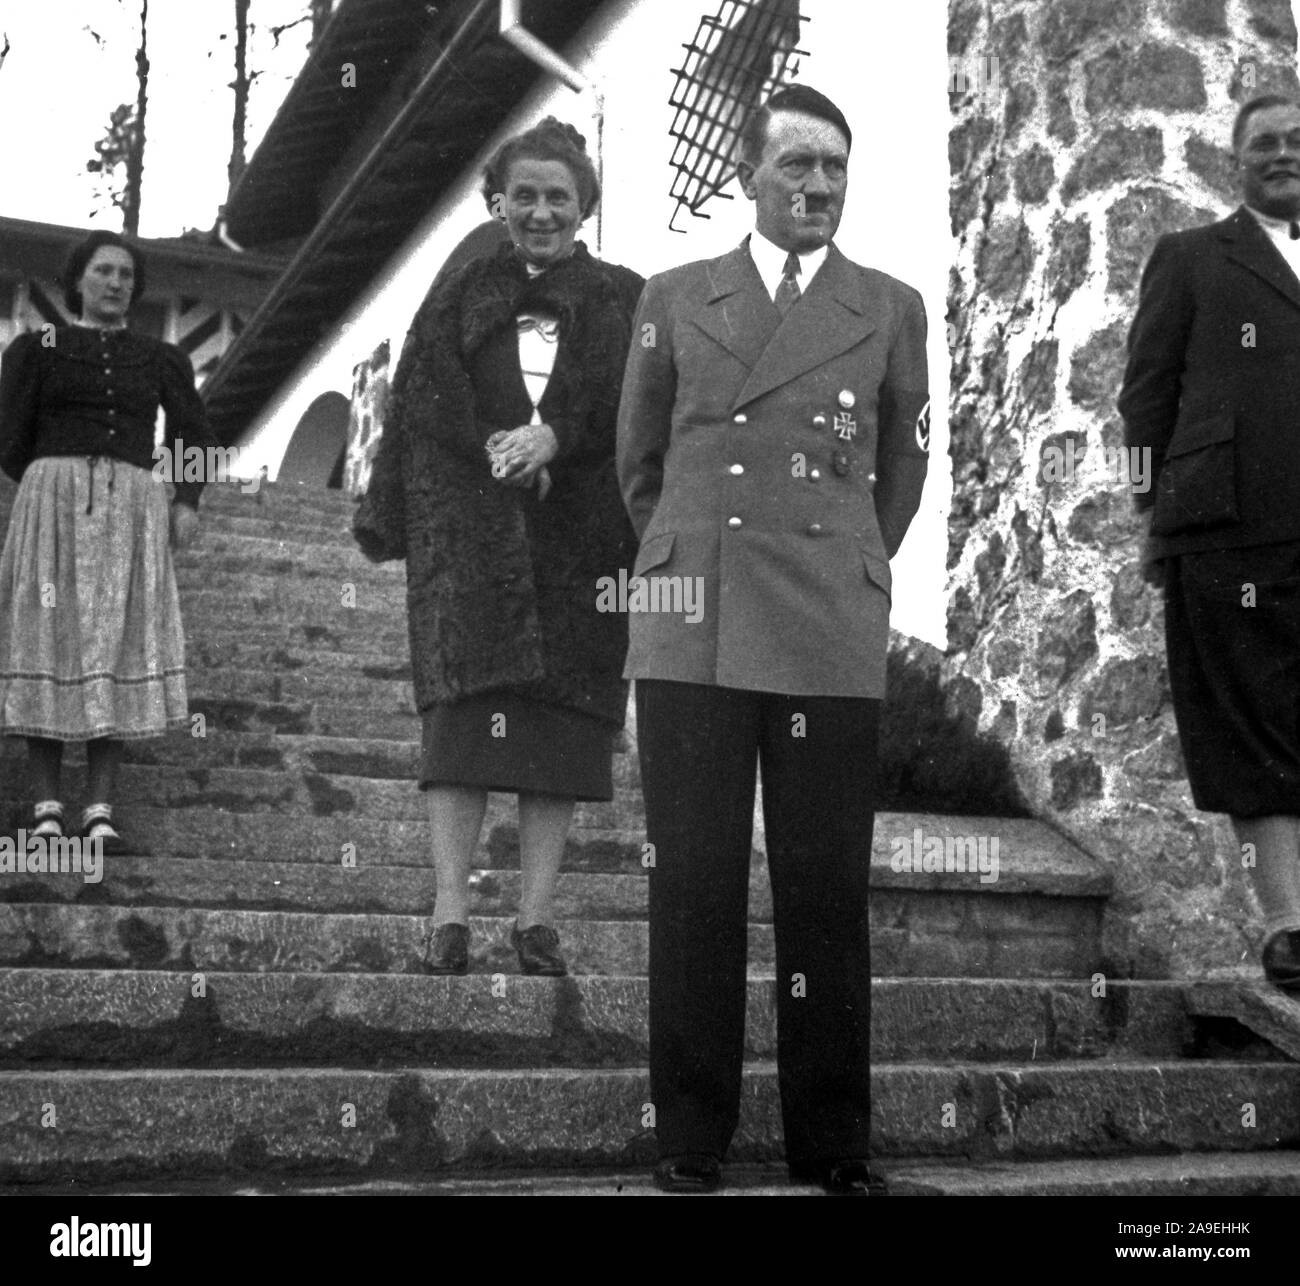 Eva Braun Collection (dvadeset osam) - Adolf Hitler debout sur les escaliers ca. fin des années 1930 ou au début des années 1940 Banque D'Images